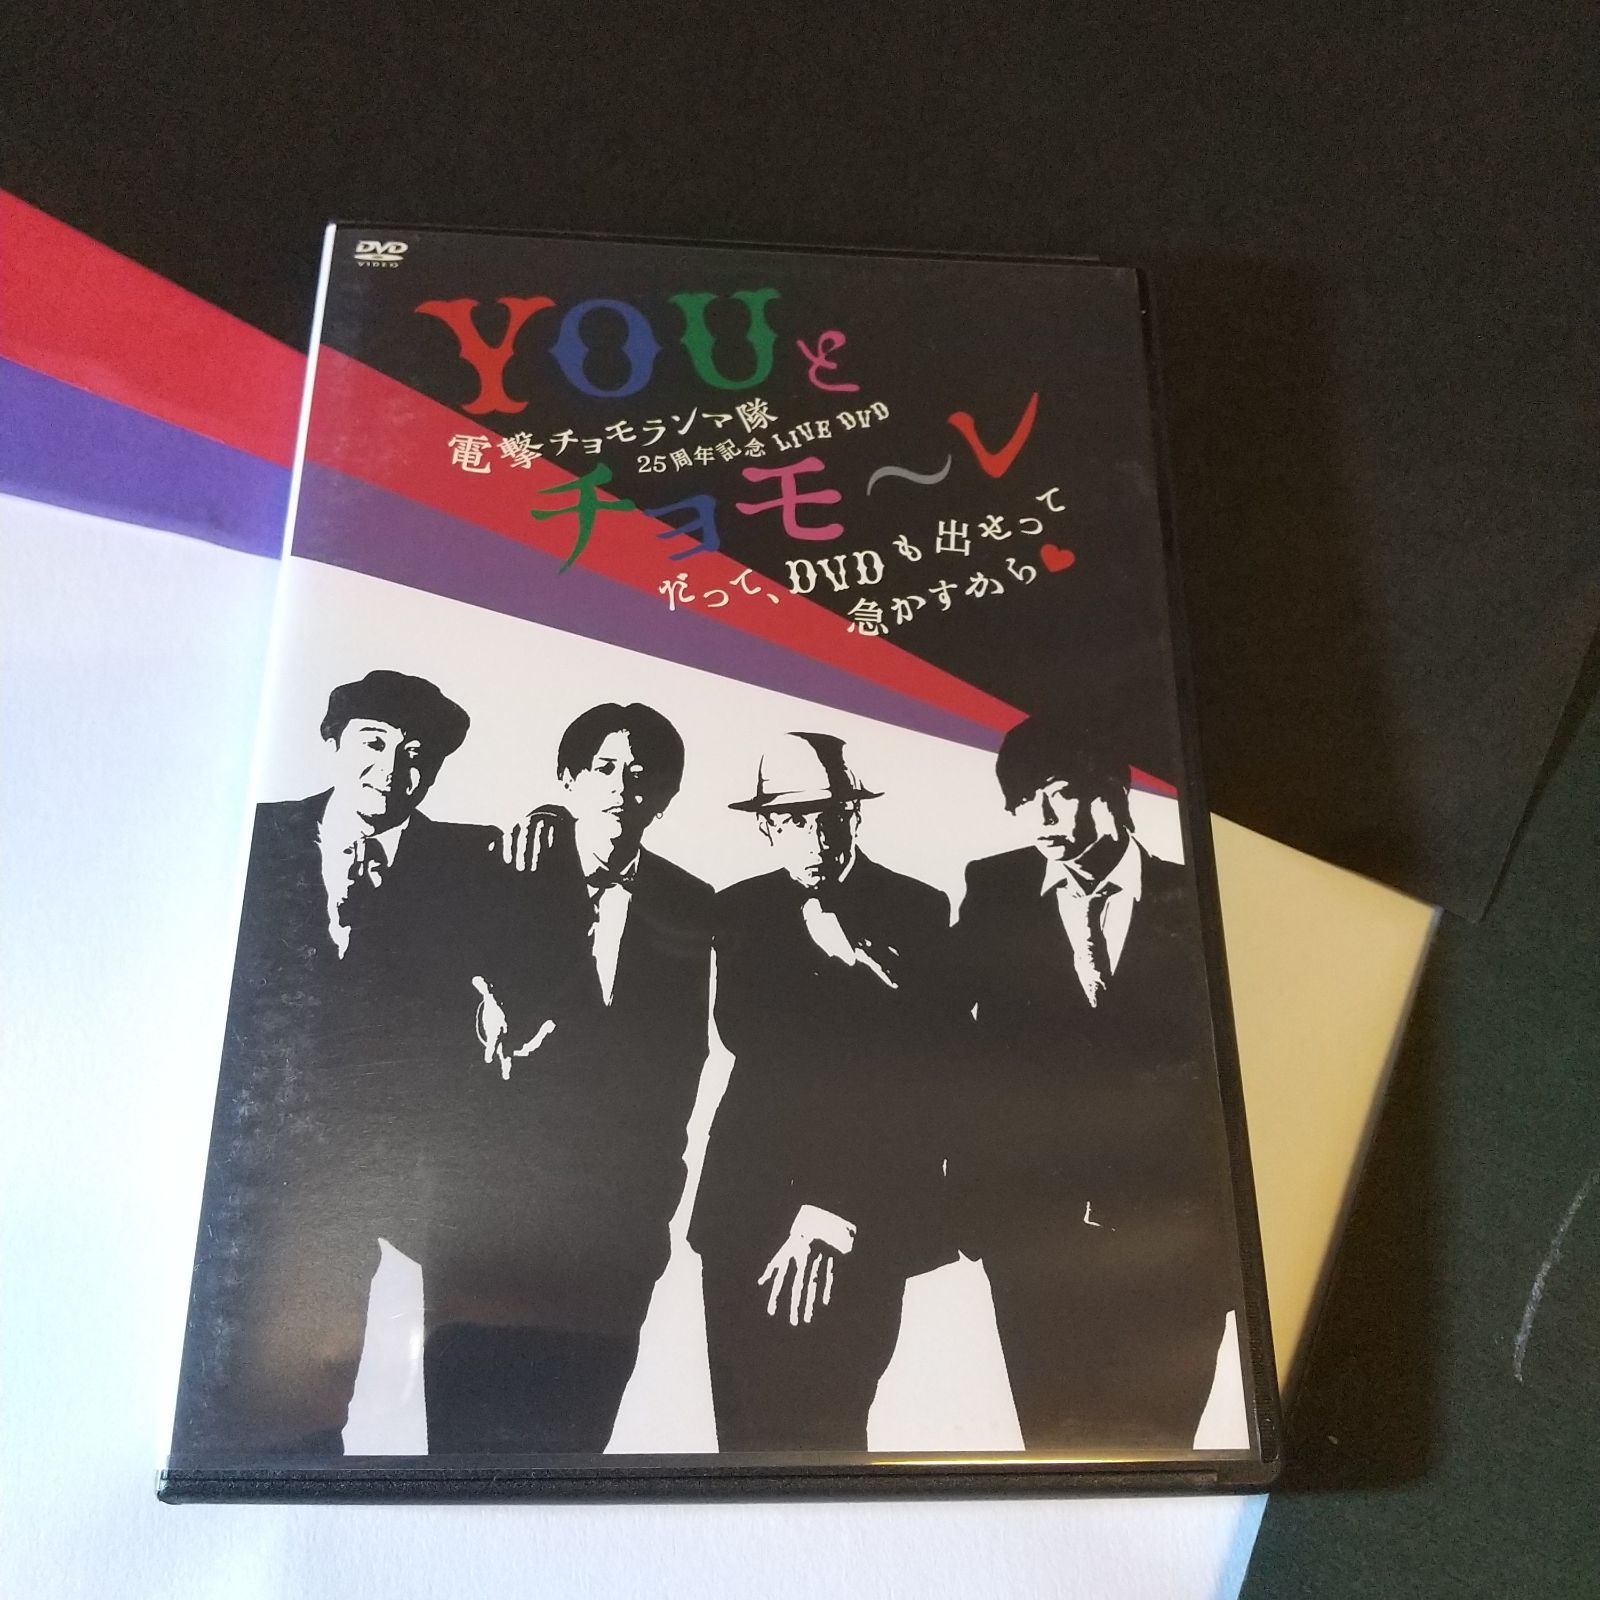 電撃チョモランマ隊25周年記念LIVE DVD「YOUとチョモ~レ~だって、DVDも